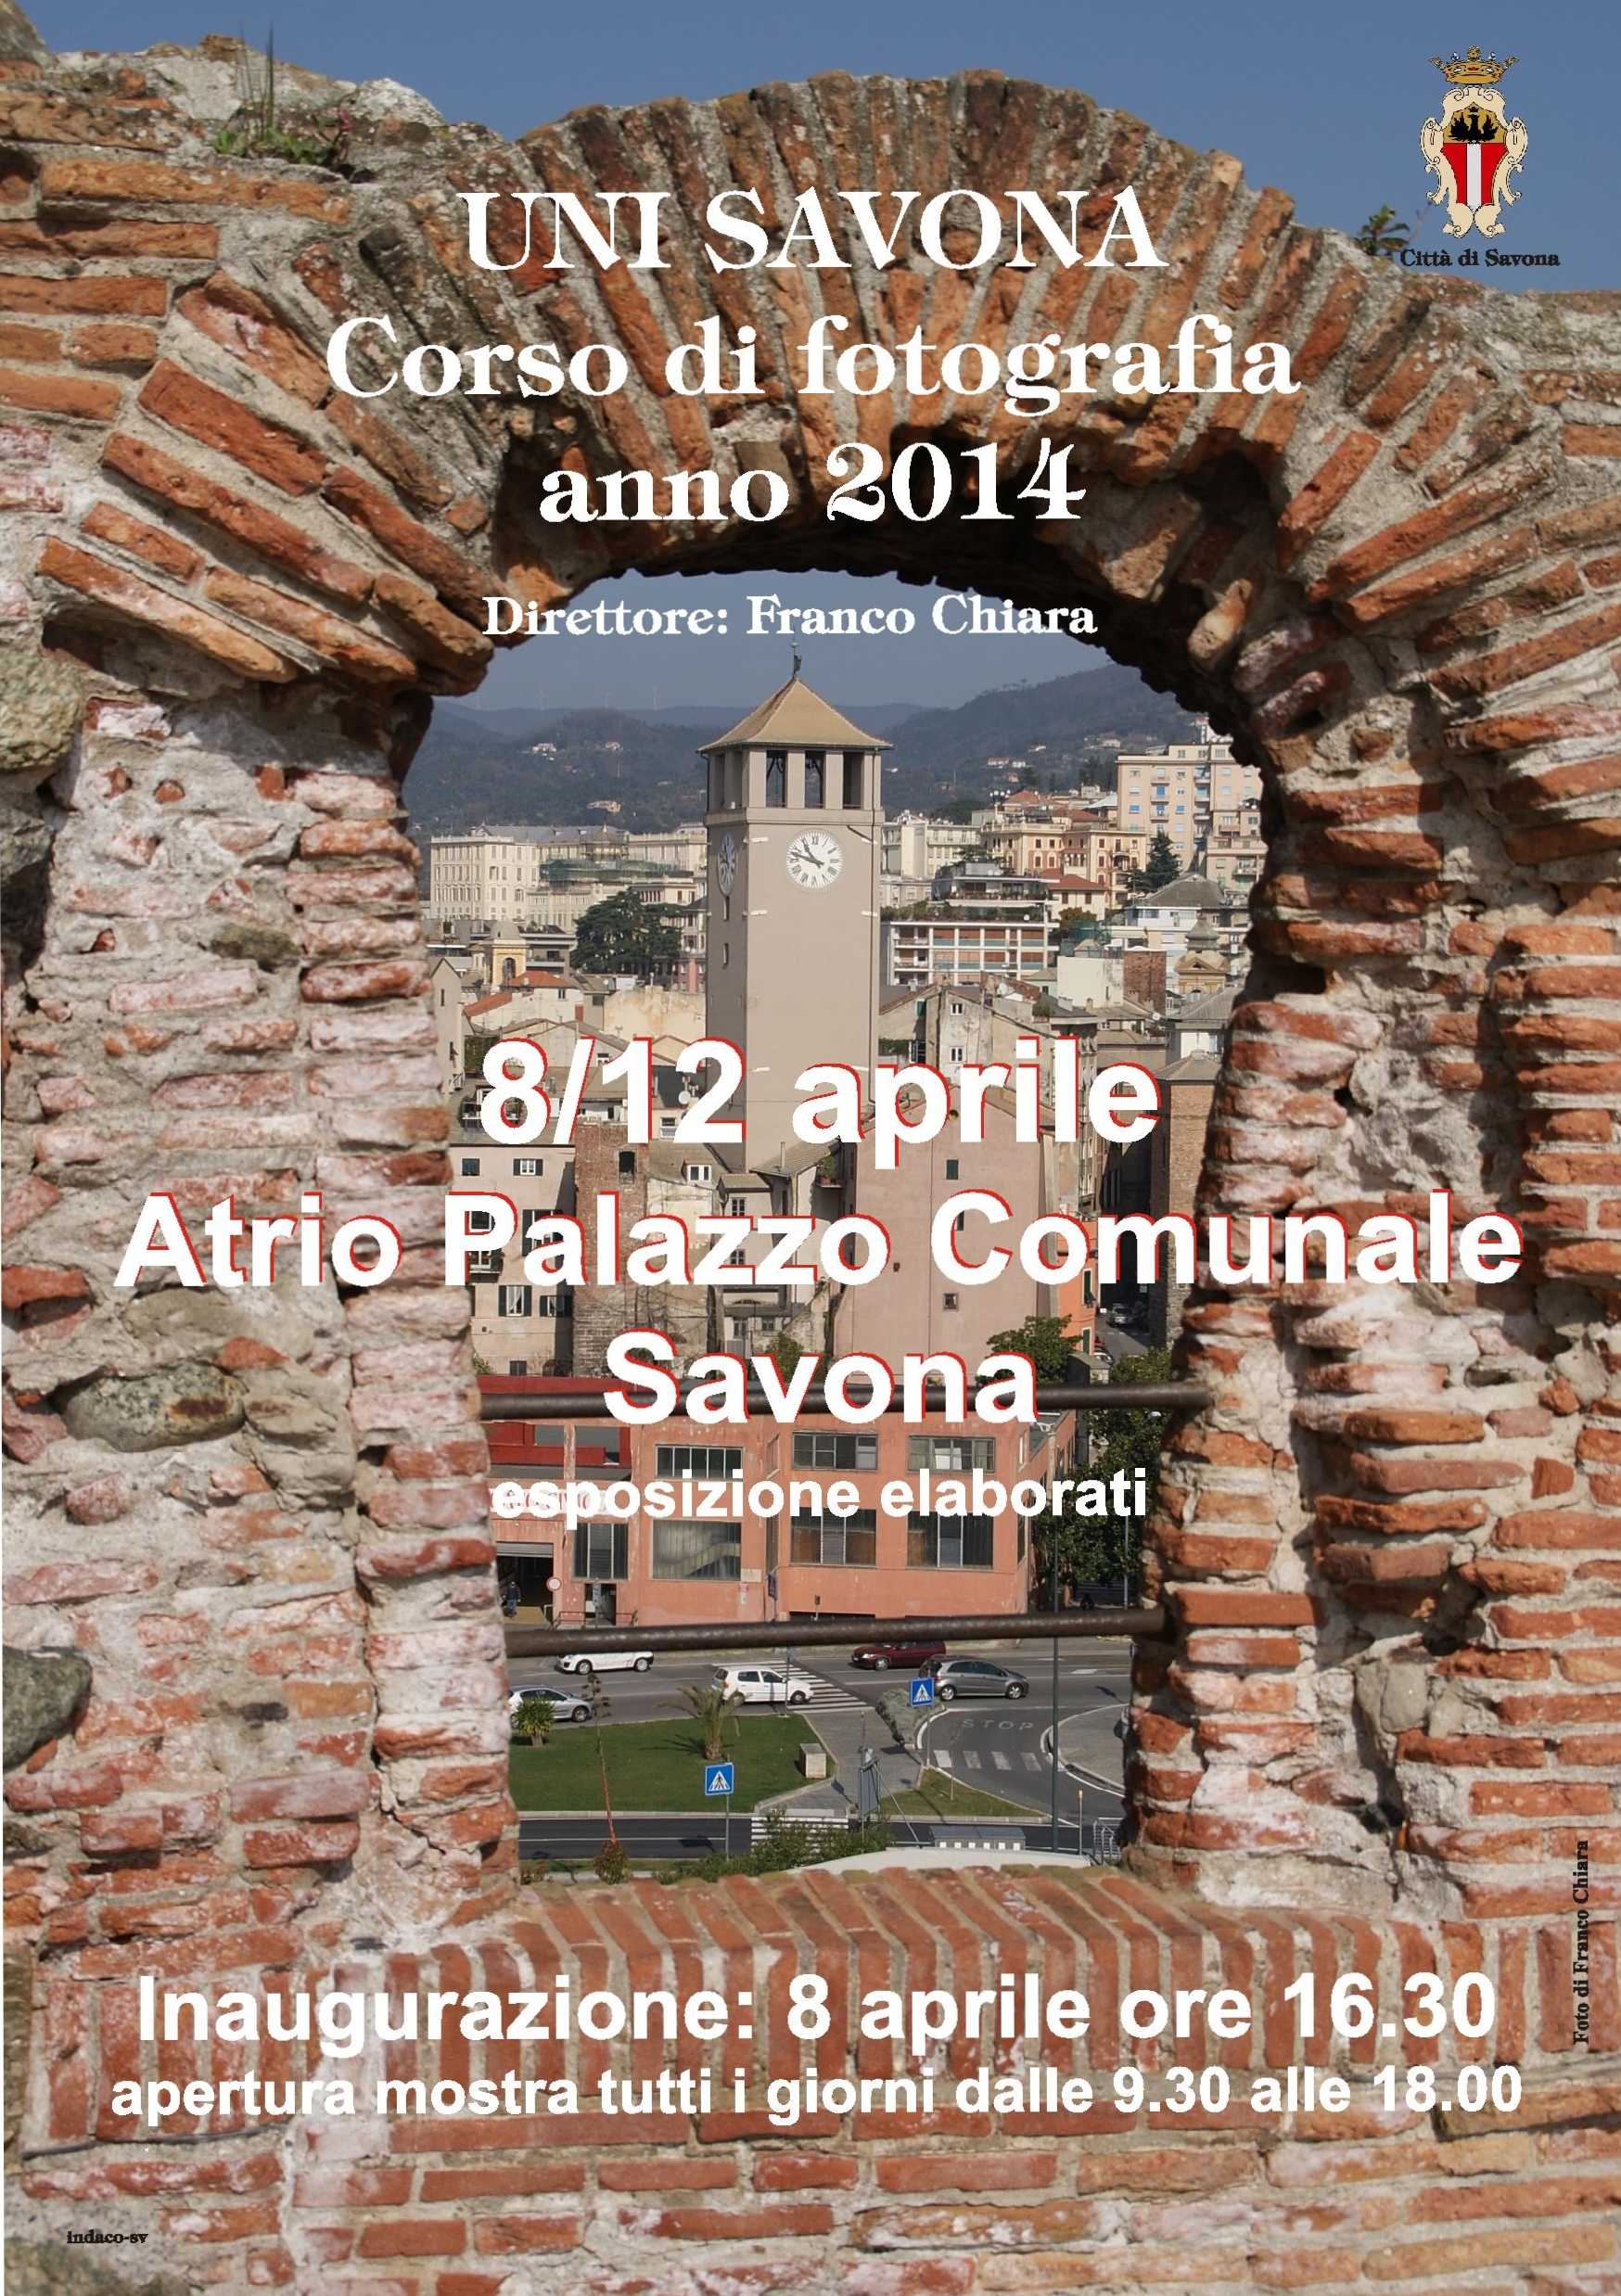 Uni Savona presenta: corso di fotografia presso il Palazzo Comunale